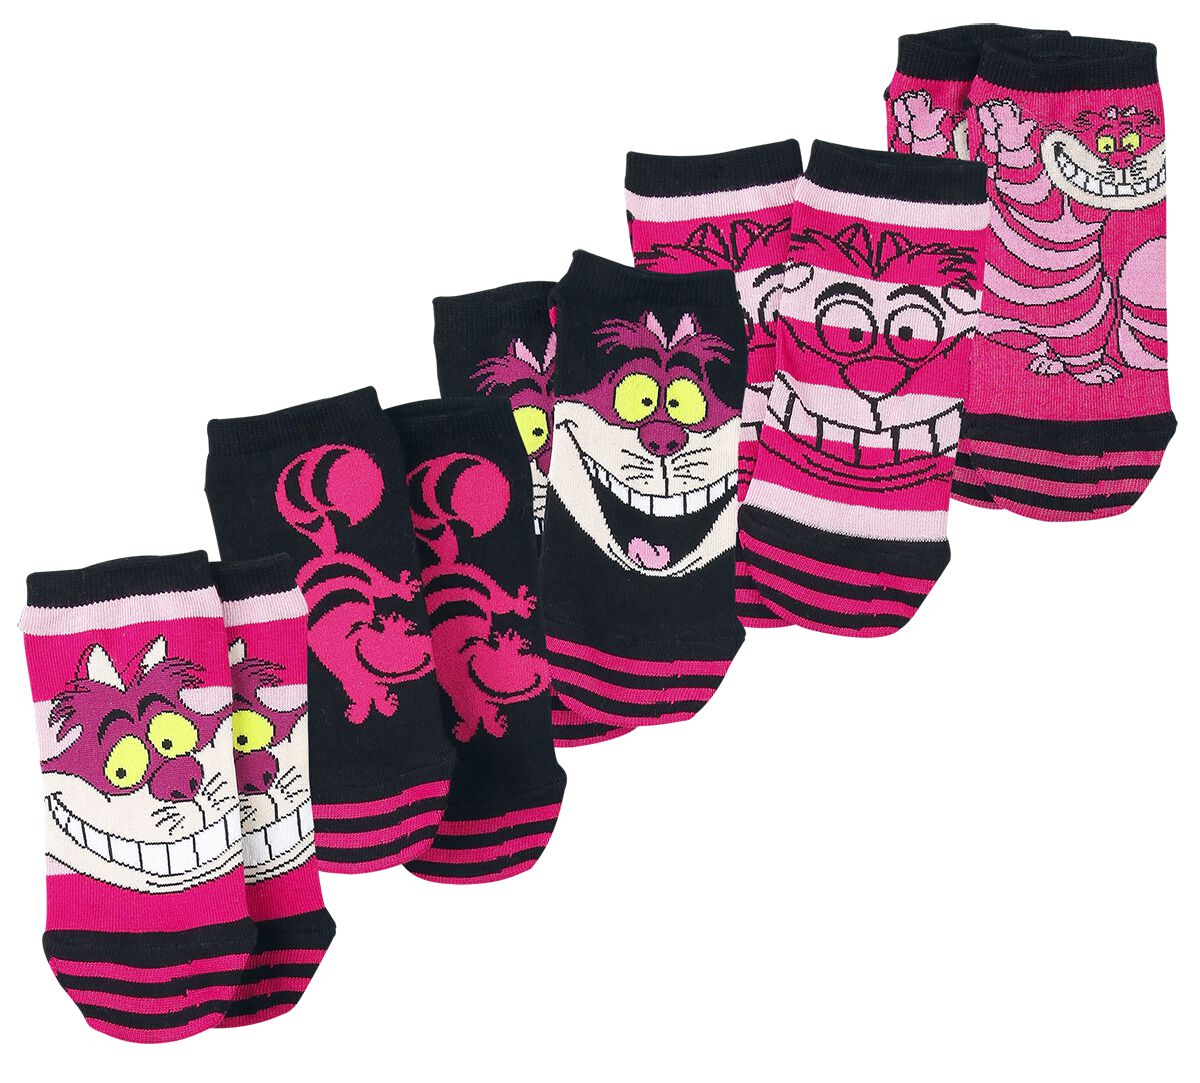 Alice im Wunderland Grinsekatze Socken pink schwarz 39612